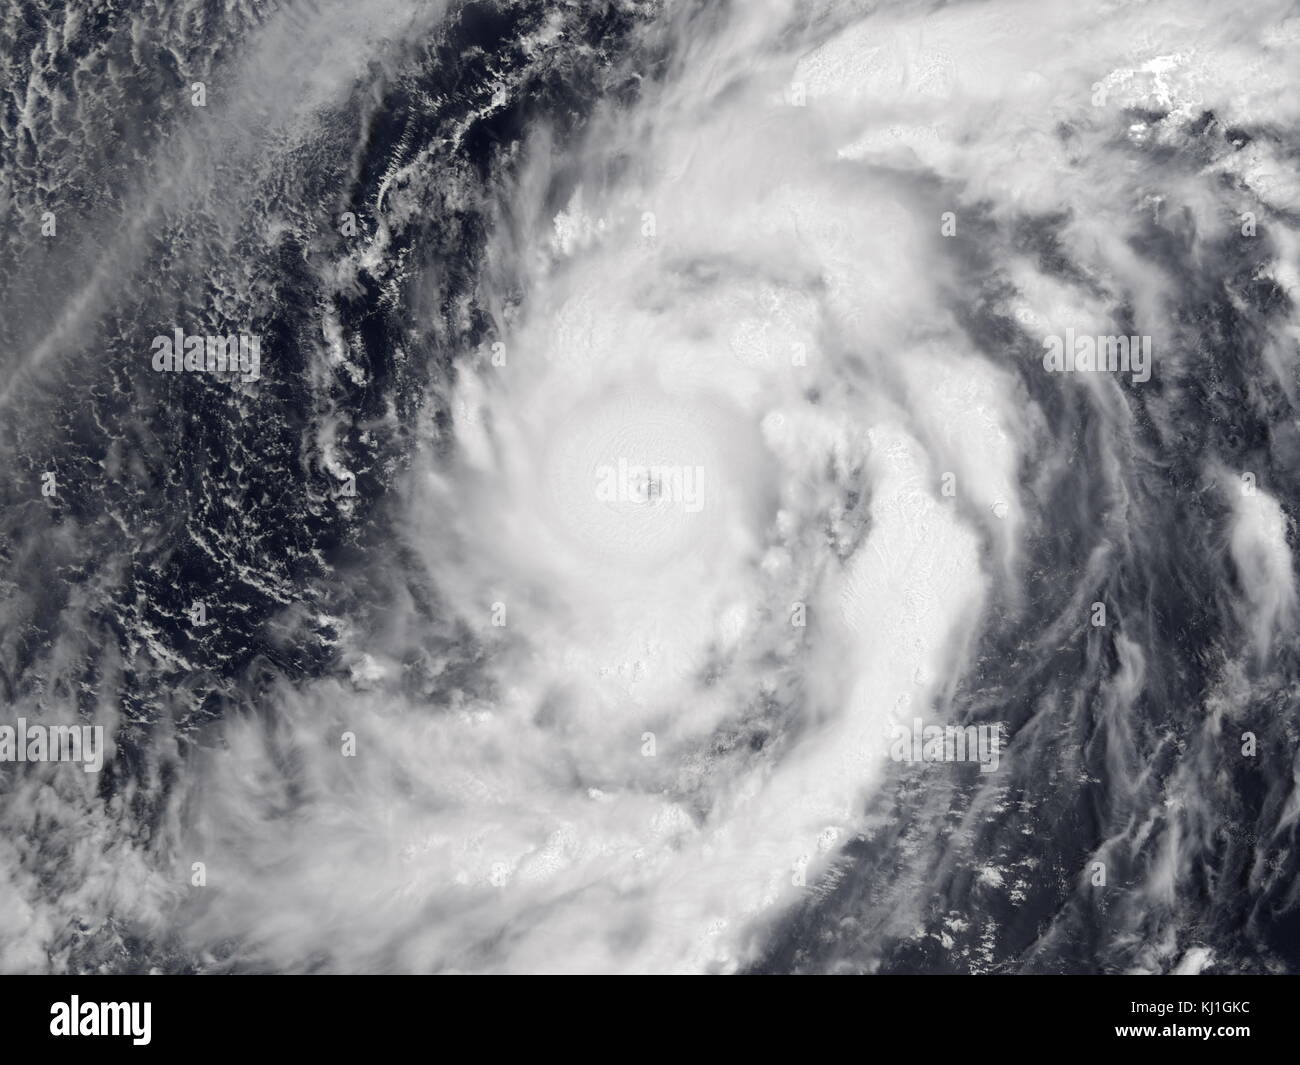 Il tifone Damrey era una categoria 5, super typhoon il 9 maggio 2000. È stato il primo temporale dell'Oceano Pacifico zona tifone stagione. Damrey era il più forte possono typhoon dal tifone Phyllis nel 1958. Foto Stock